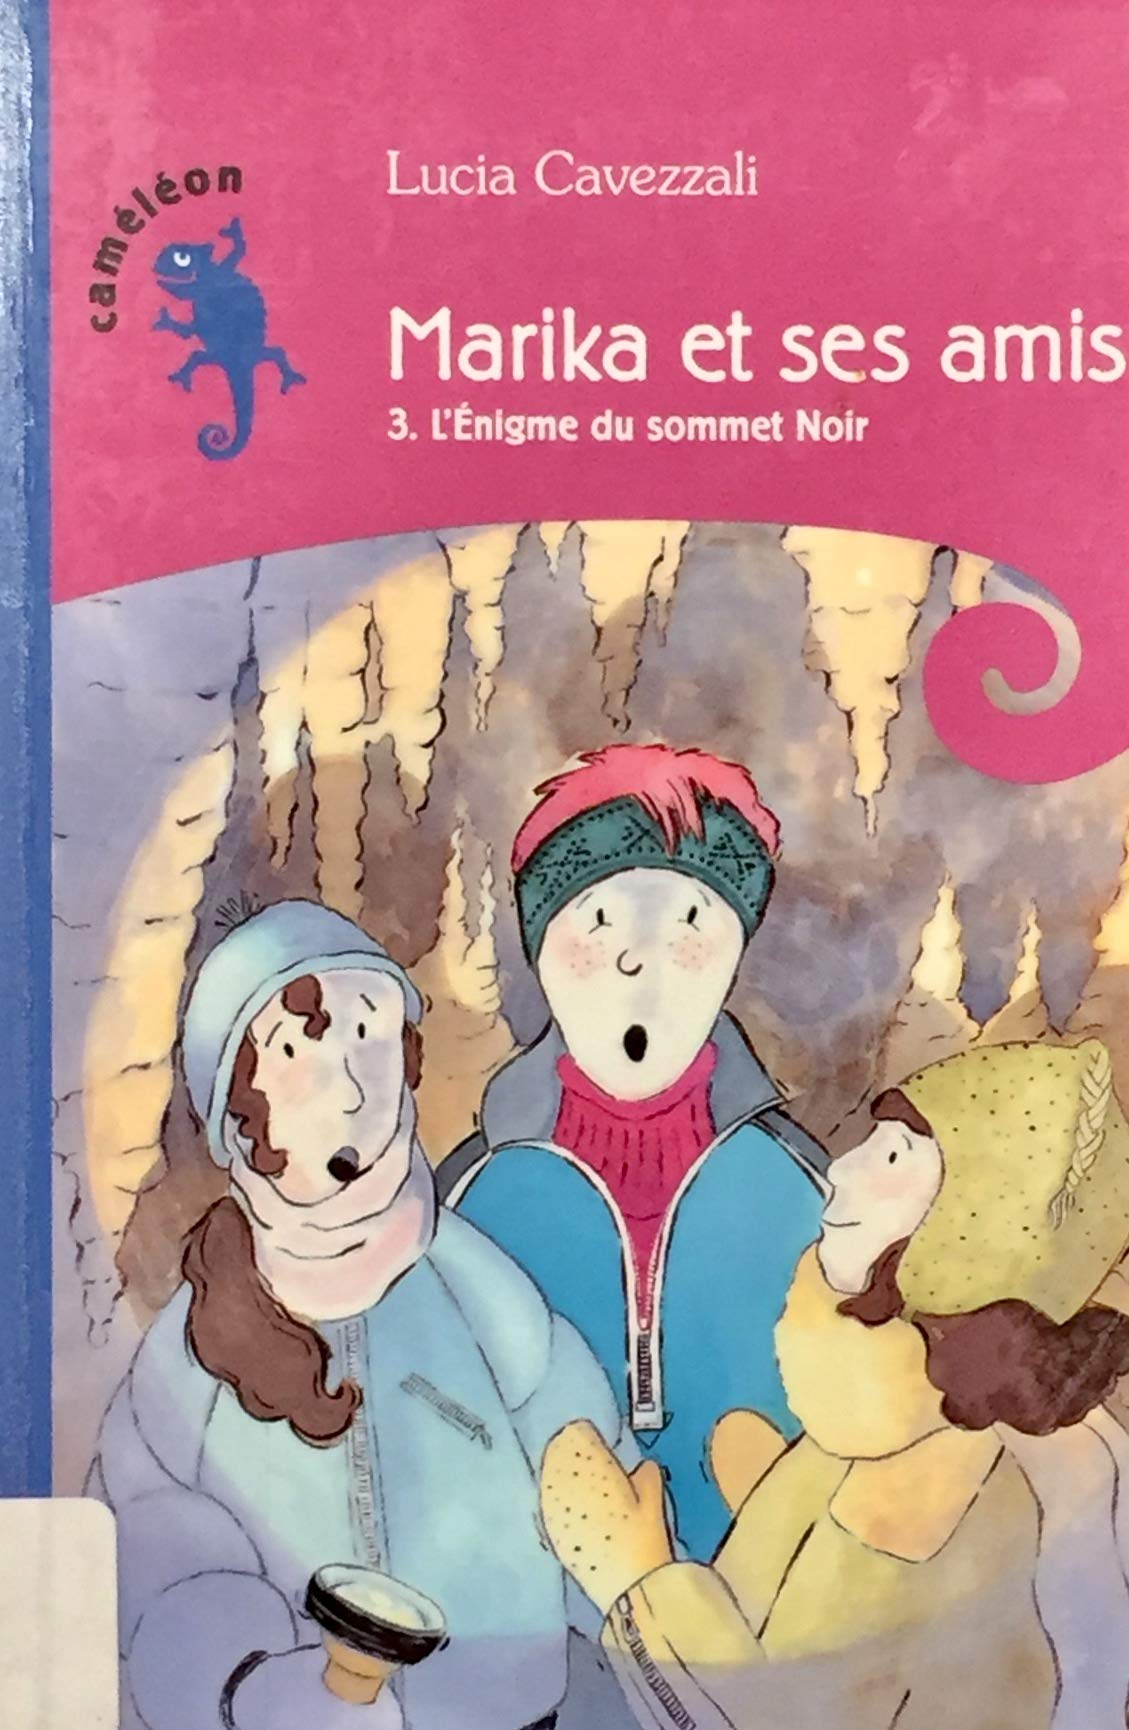 Livre ISBN 2896470247 Caméléon # 3 : Marika et ses amis : L'énigme du sommet noir (Lucia Cavezzali)